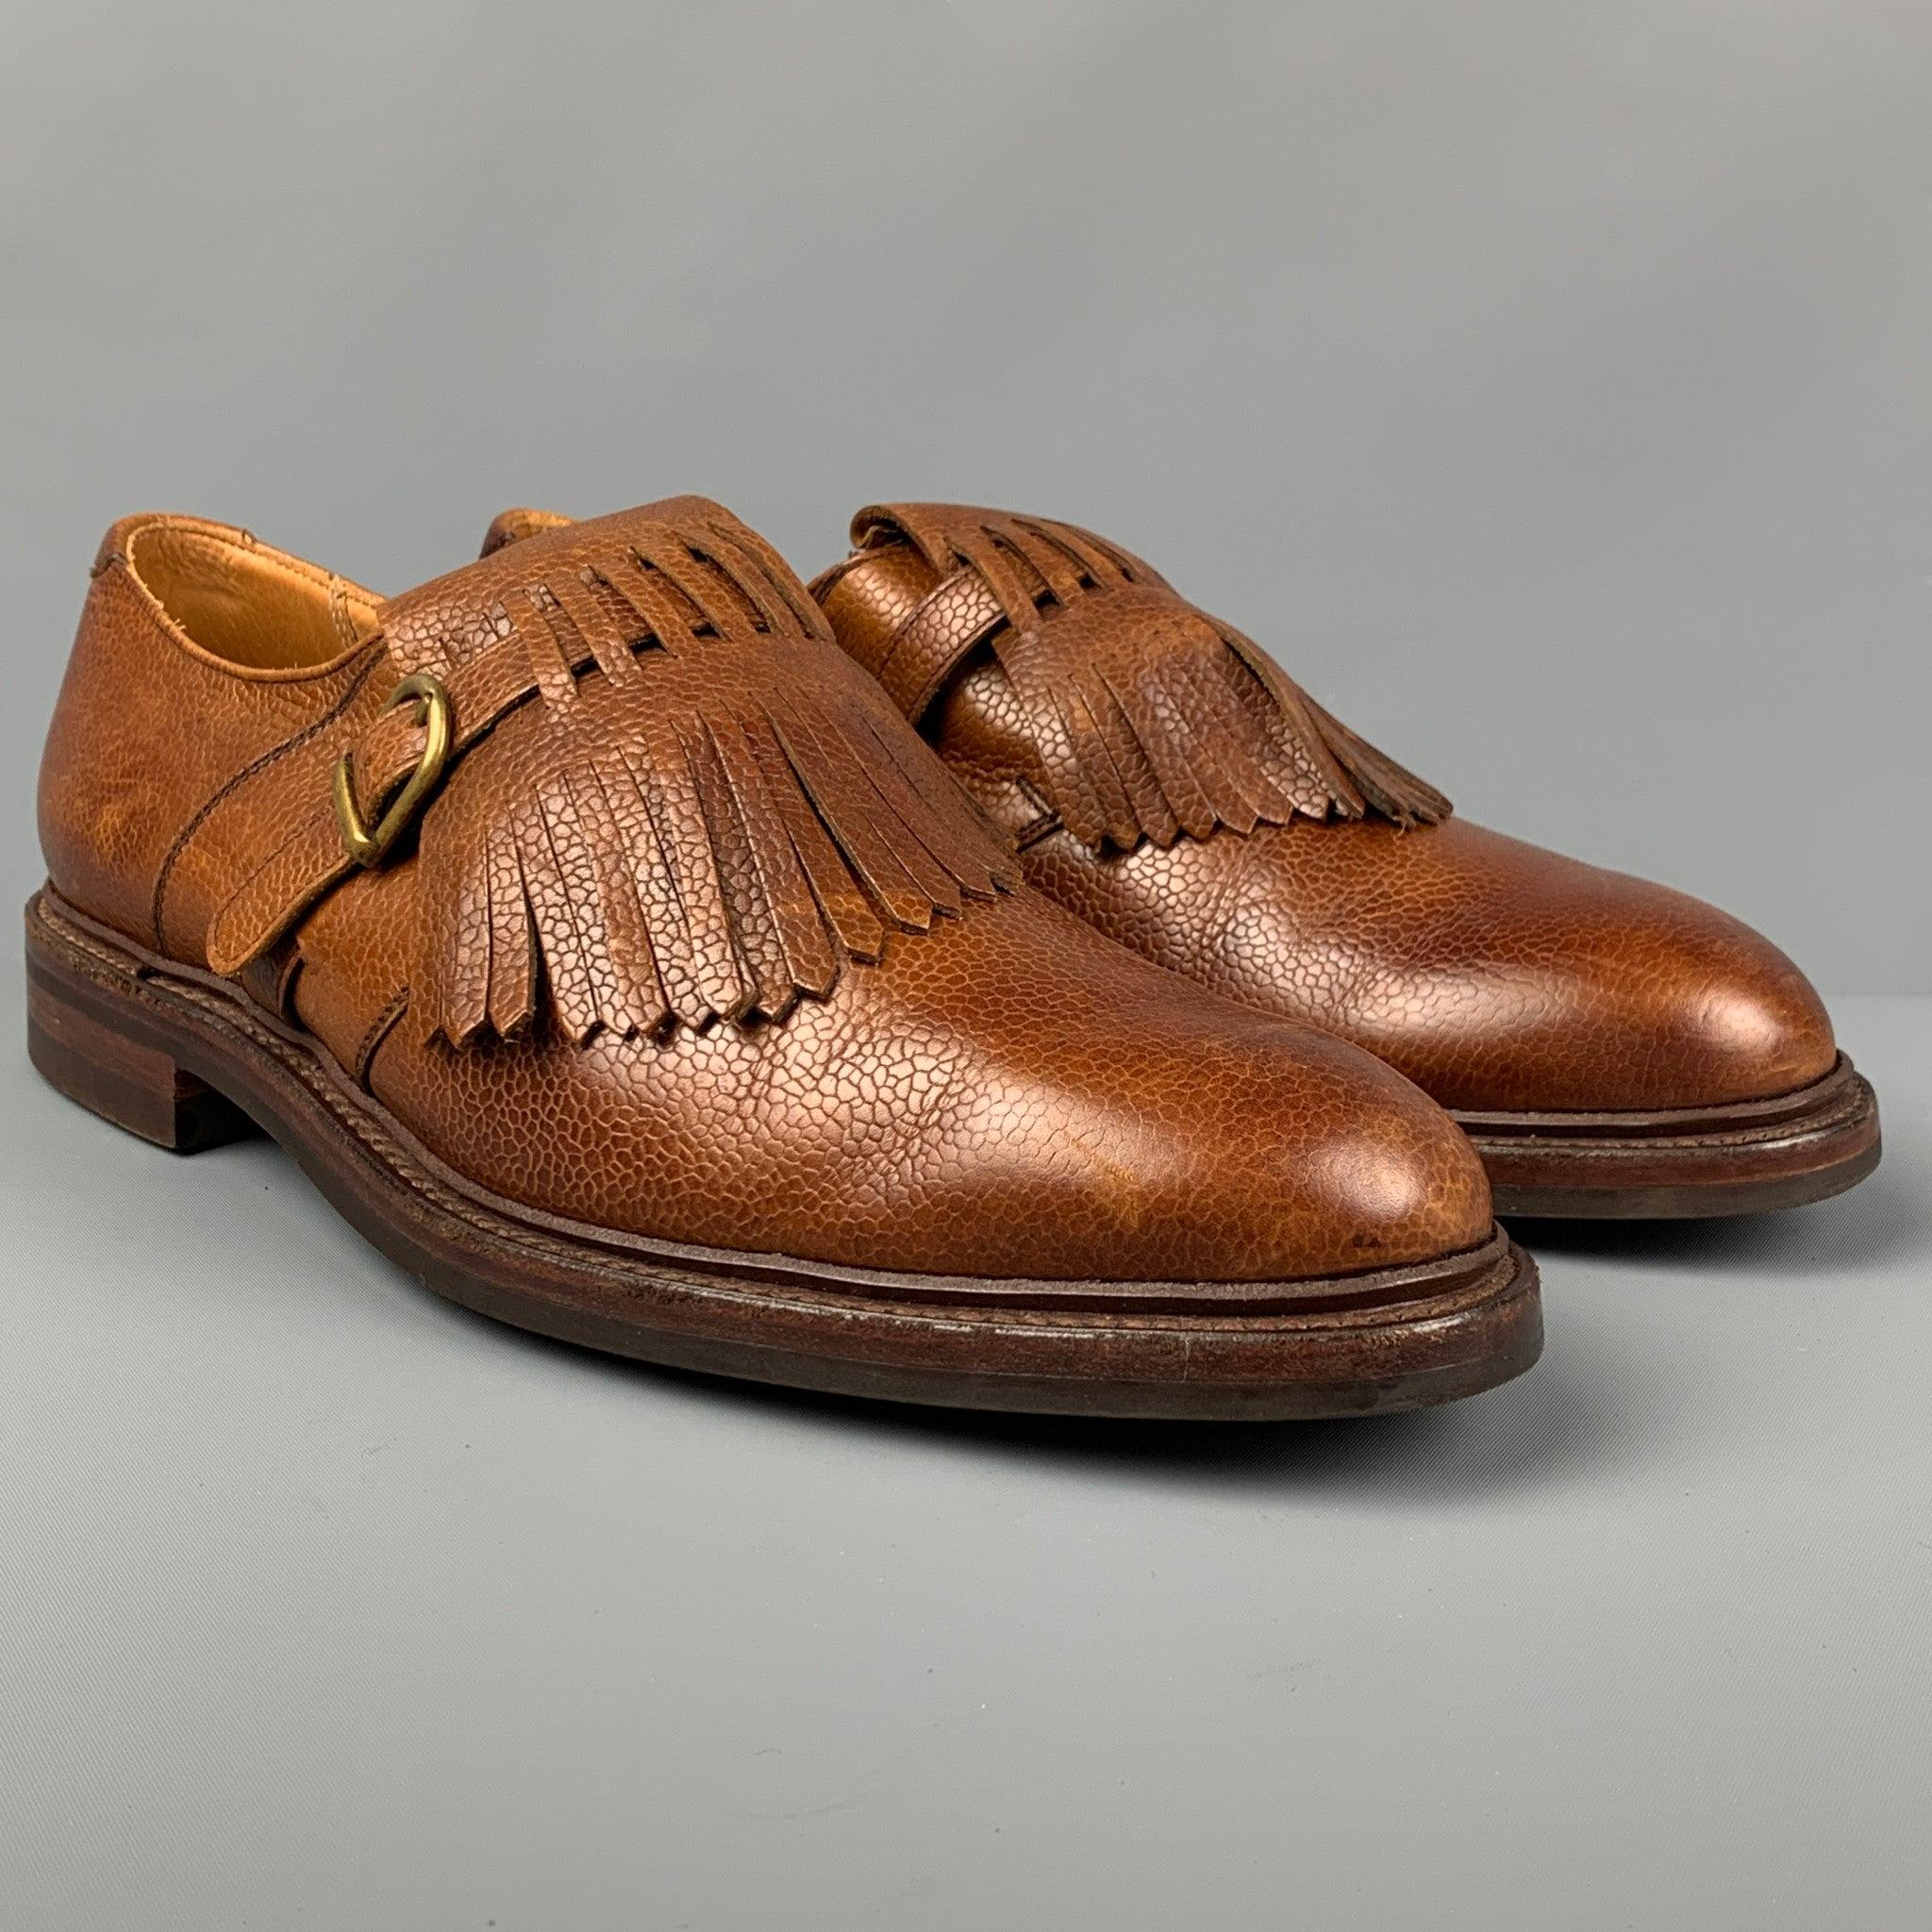 Les chaussures RALPH LAUREN sont en cuir fauve et présentent une boucle à frange sur le devant ainsi qu'une fermeture à lacets. Fabriqué en Angleterre.
Très bien
Etat d'occasion. 

Marqué :   10.5Semelle d'usure : 12.5 pouces  x 4,5 pouces 

  
  
